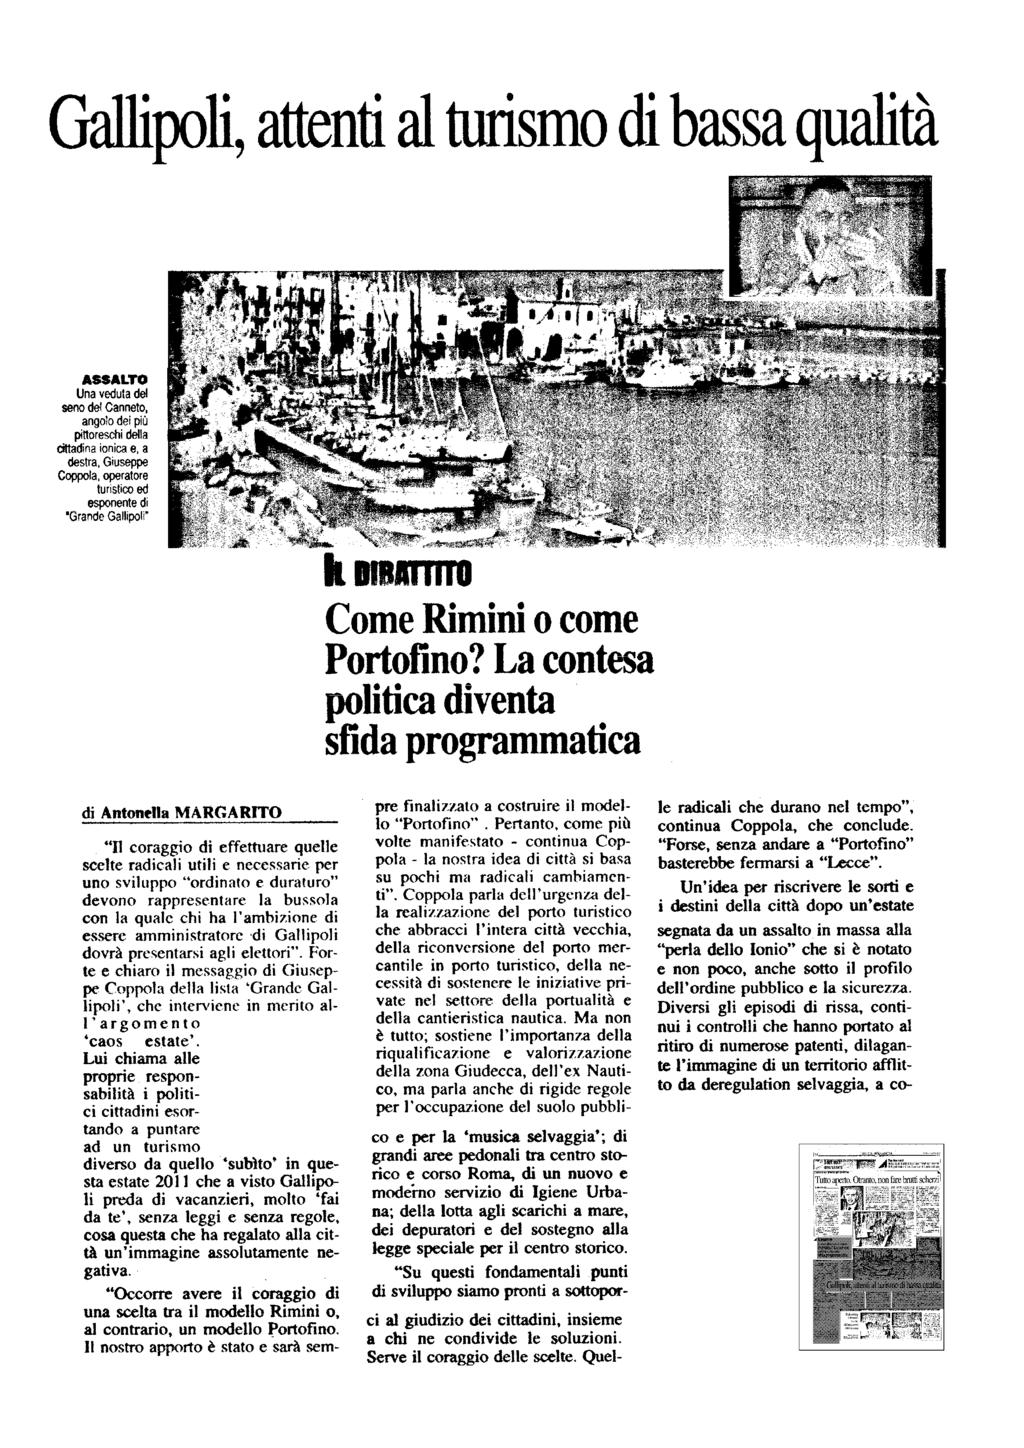 Lettori: n.d. Diffusione: n.d. Nuovo Quotidiano Lecce Dir.